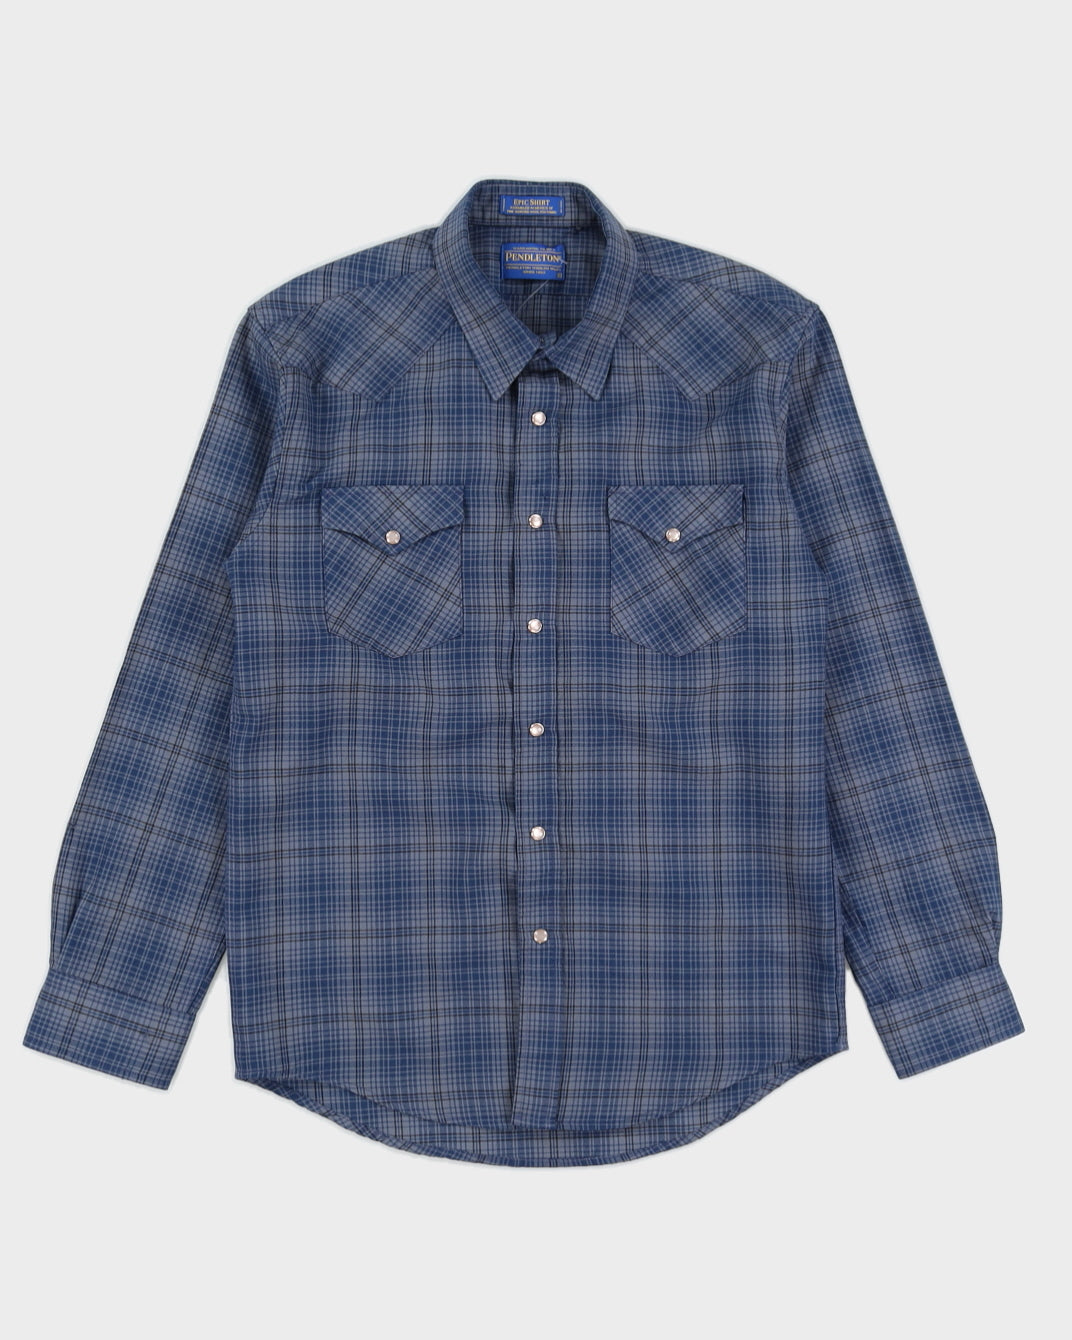 Pendleton Blue Plaid Shirt - M